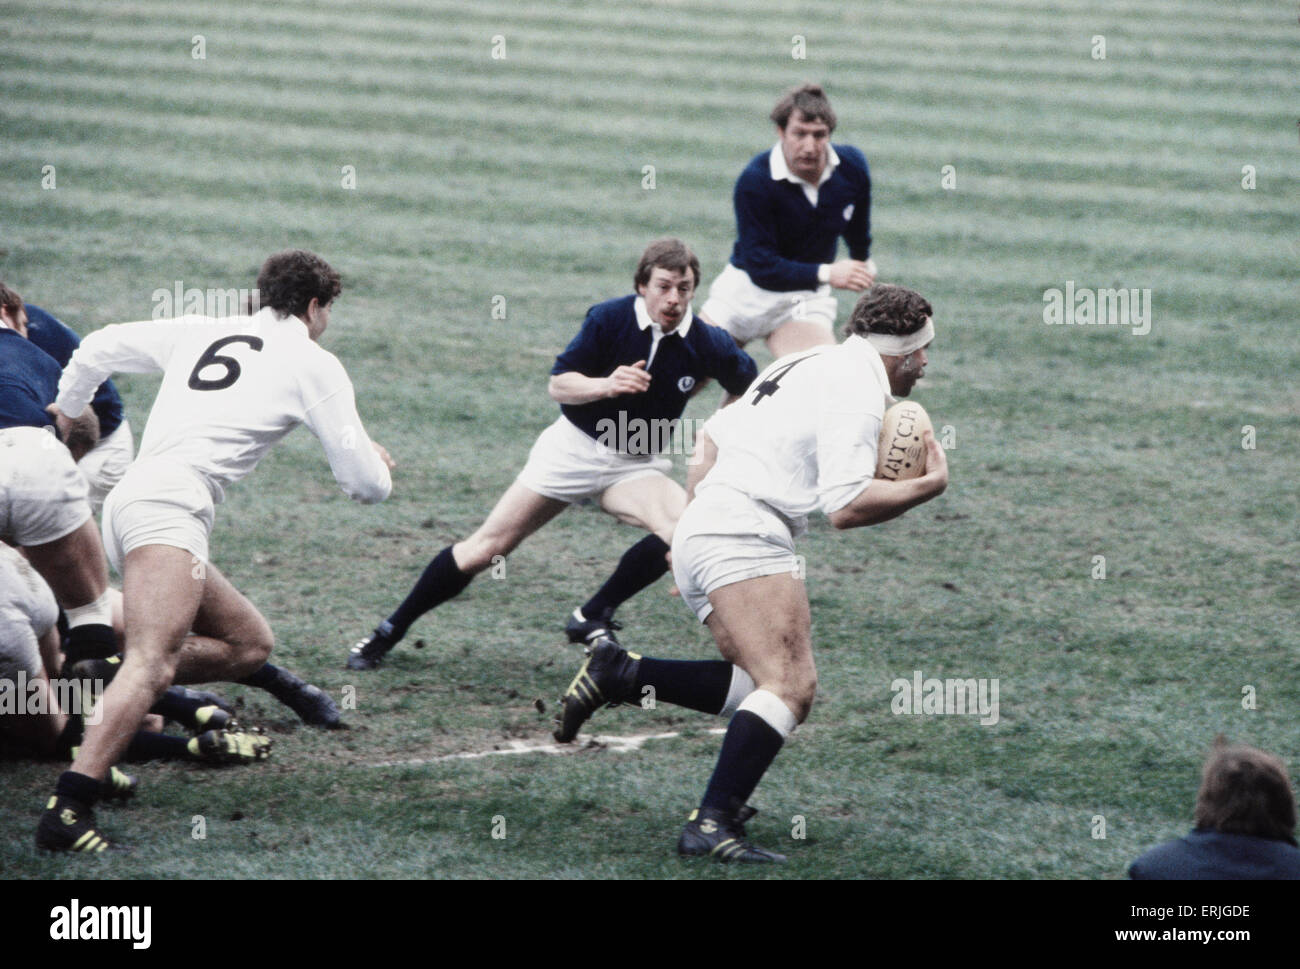 Il Rugby 5 Nazioni partita internazionale a Twickenham. Inghilterra 23 v Scozia 17. Azione durante la partita con l'Inghilterra del Bill Beaumont sull'attacco. Il 21 febbraio 1981. Foto Stock